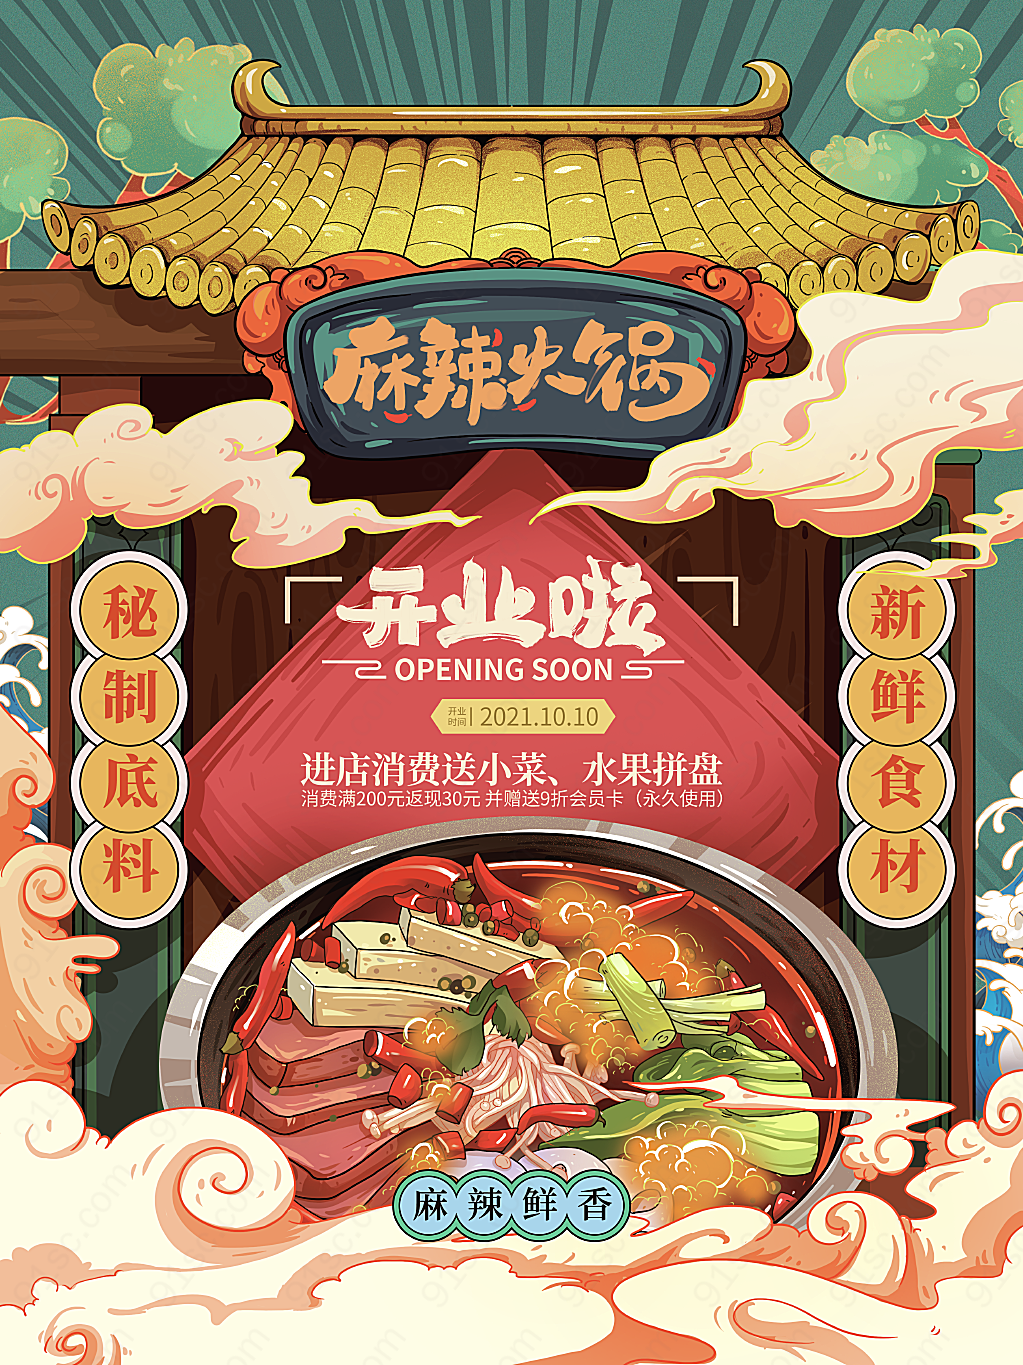 国潮餐饮火锅开业创意手绘促销促销海报